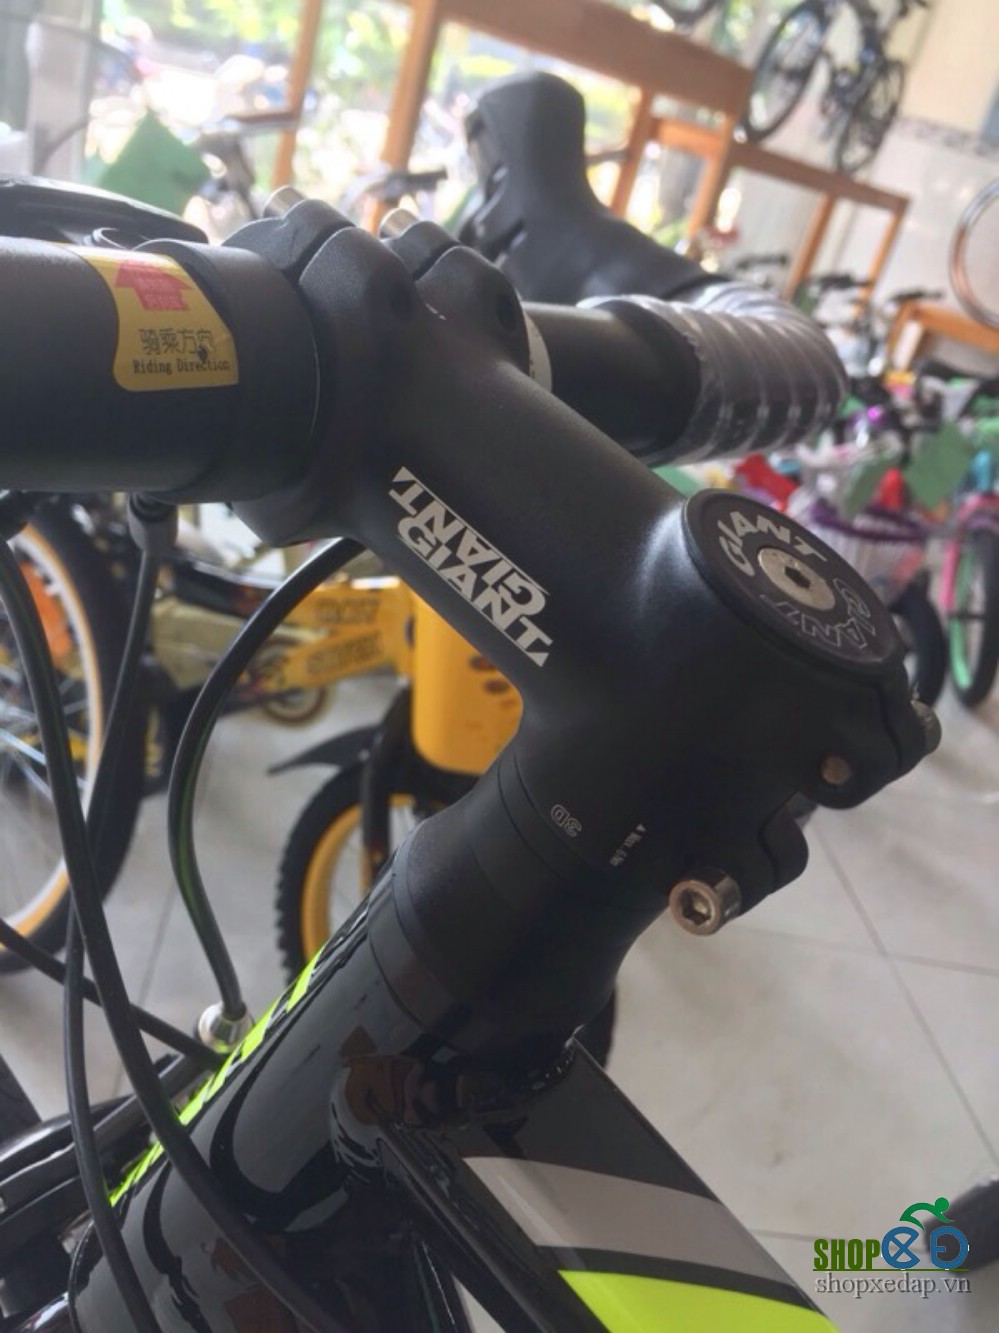 Xe đạp đua GIANT 2017 OCR 2800 Đen xanh lá